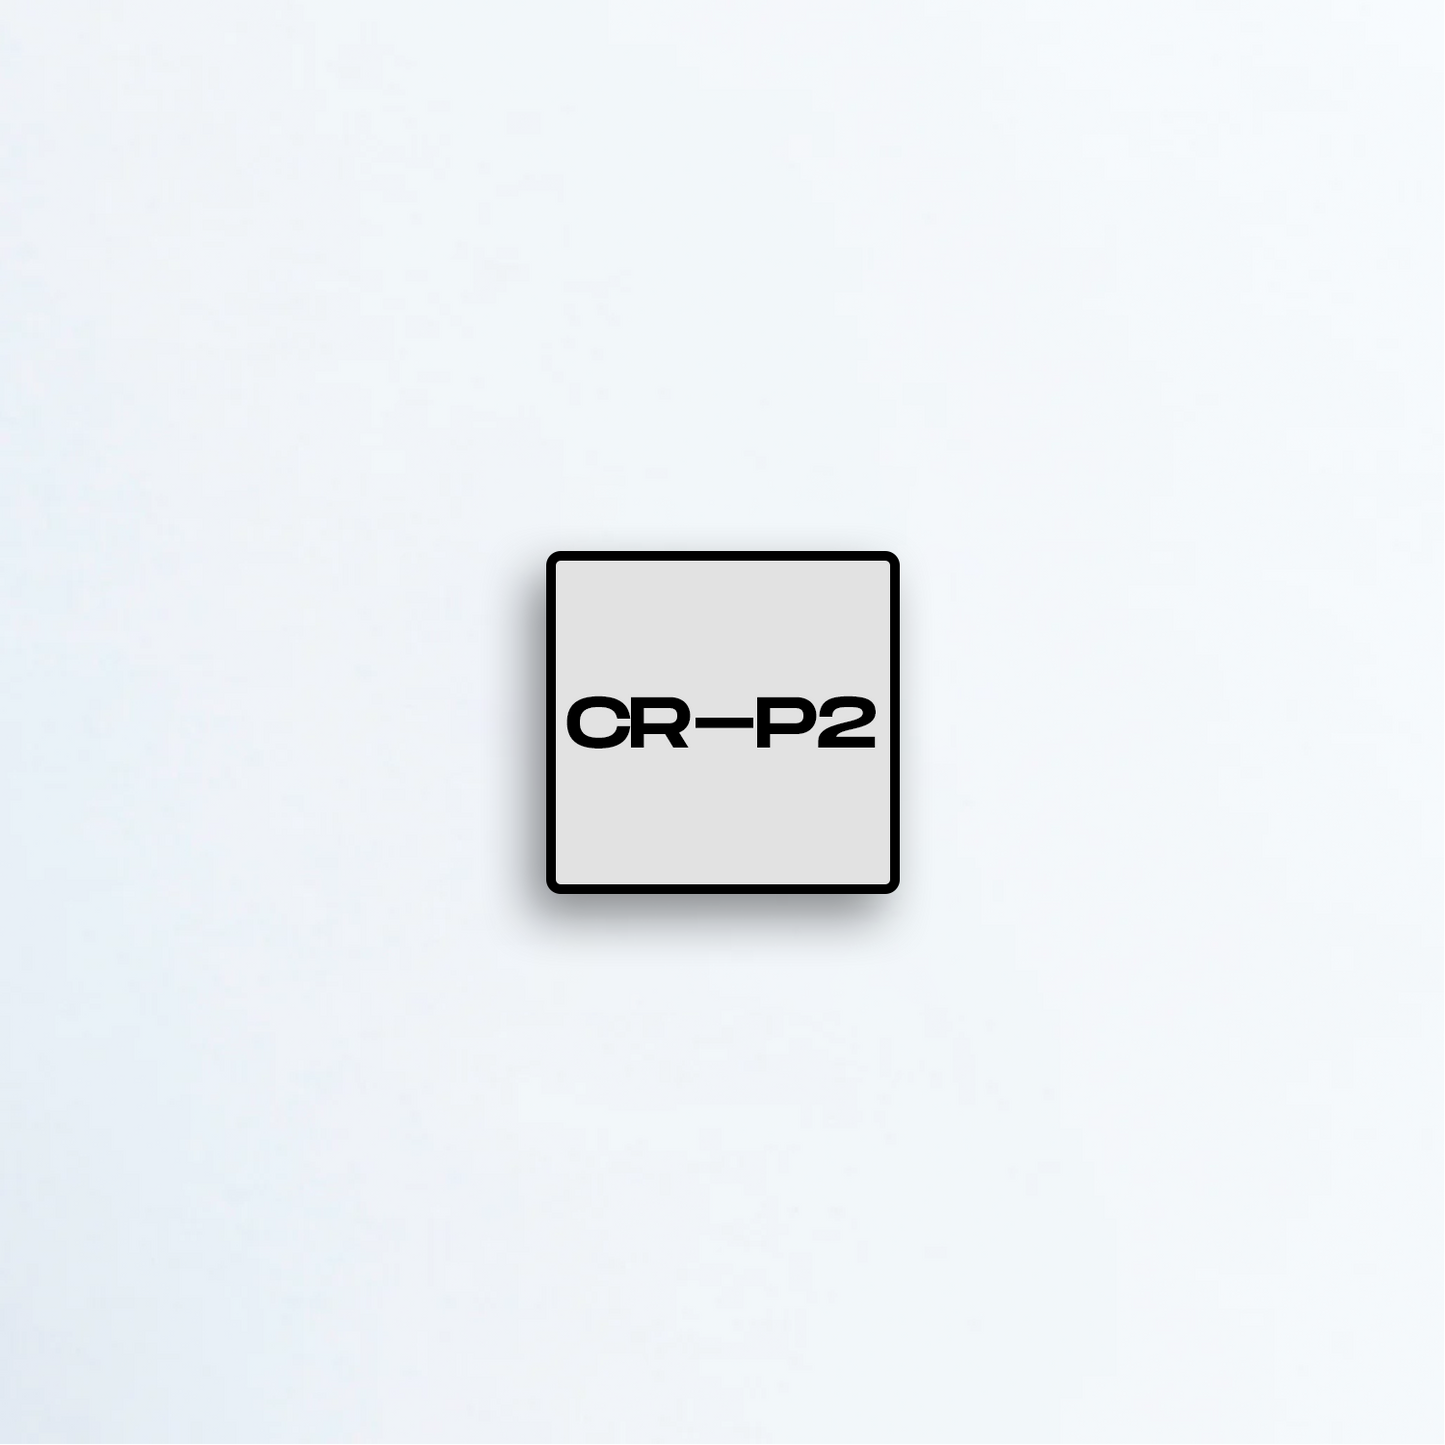 CR-P2